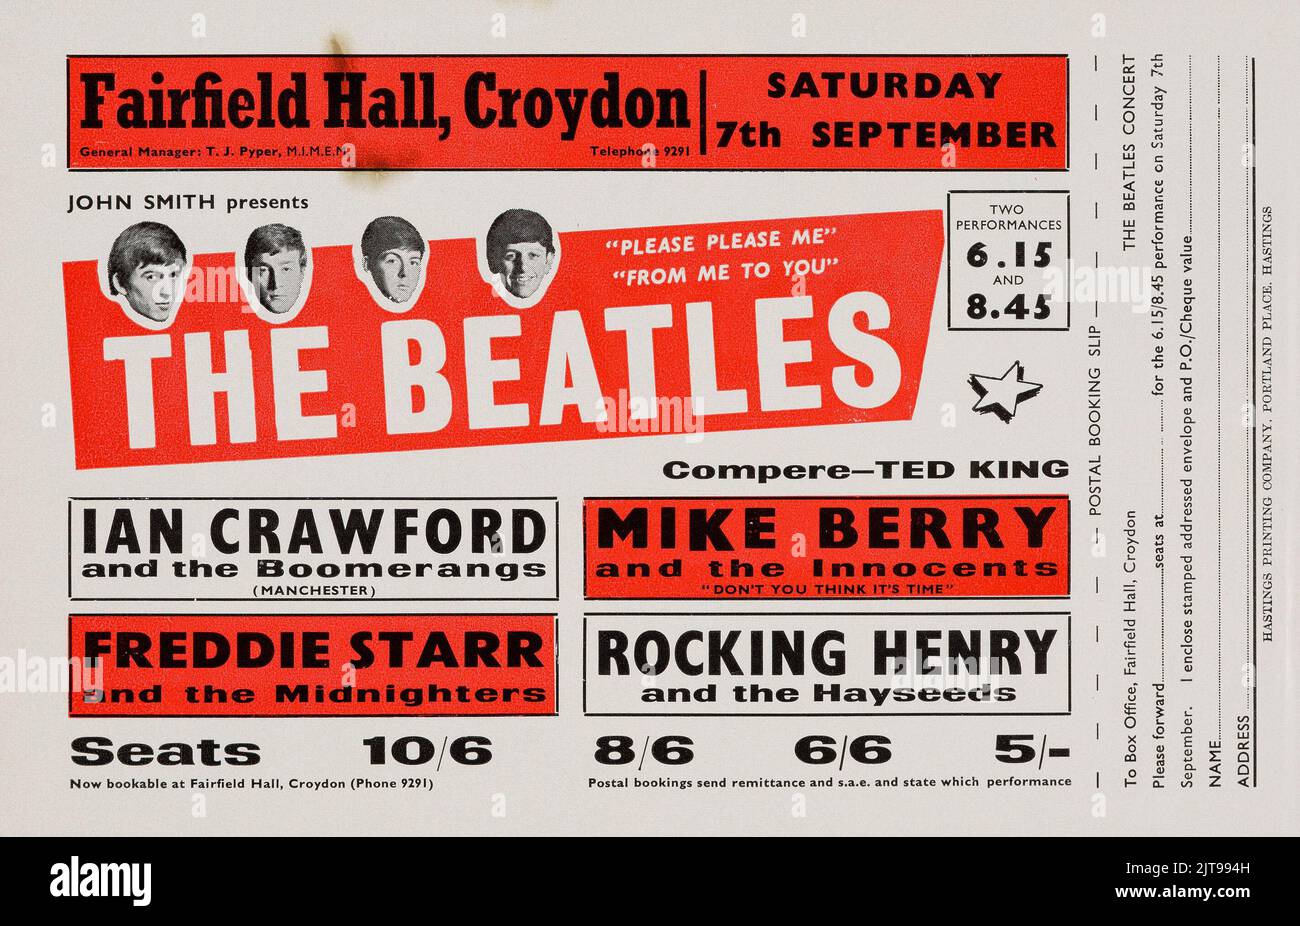 The Beatles Fairfield Hall Concert Handbill (1963) Croydon. 7th September 1963. Stock Photo